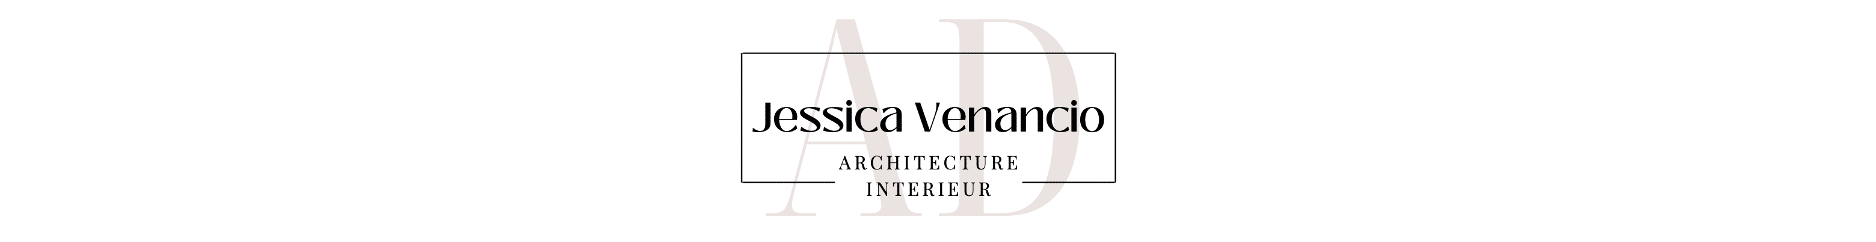 Jessica Venancio